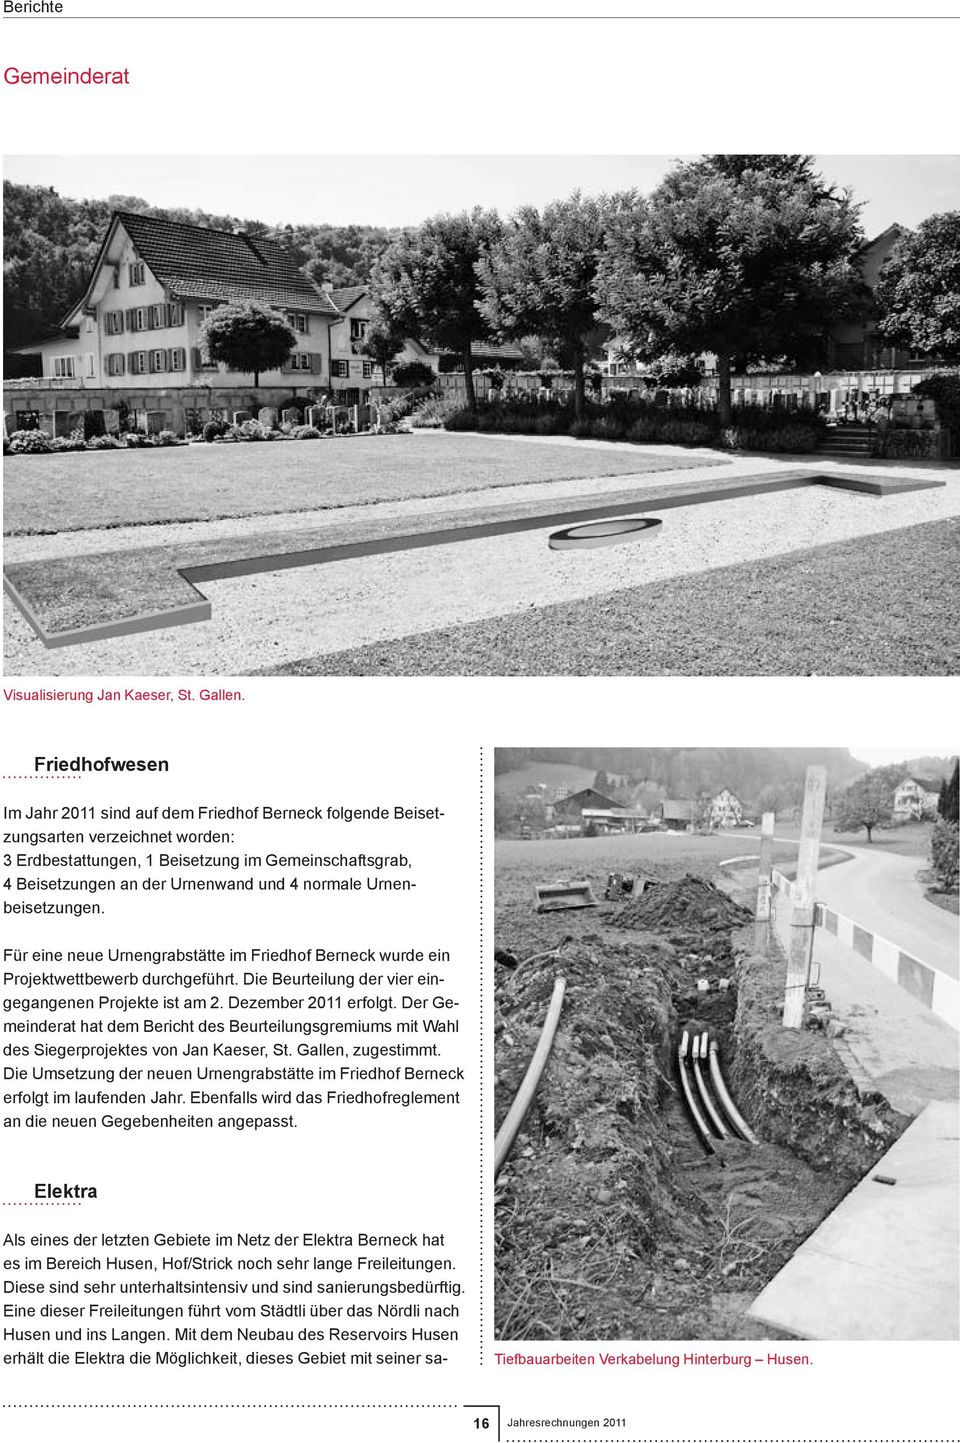 normale Urnenbeisetzungen. Für eine neue Urnengrabstätte im Friedhof Berneck wurde ein Projektwettbewerb durchgeführt. Die Beurteilung der vier eingegangenen Projekte ist am 2. Dezember 2011 erfolgt.